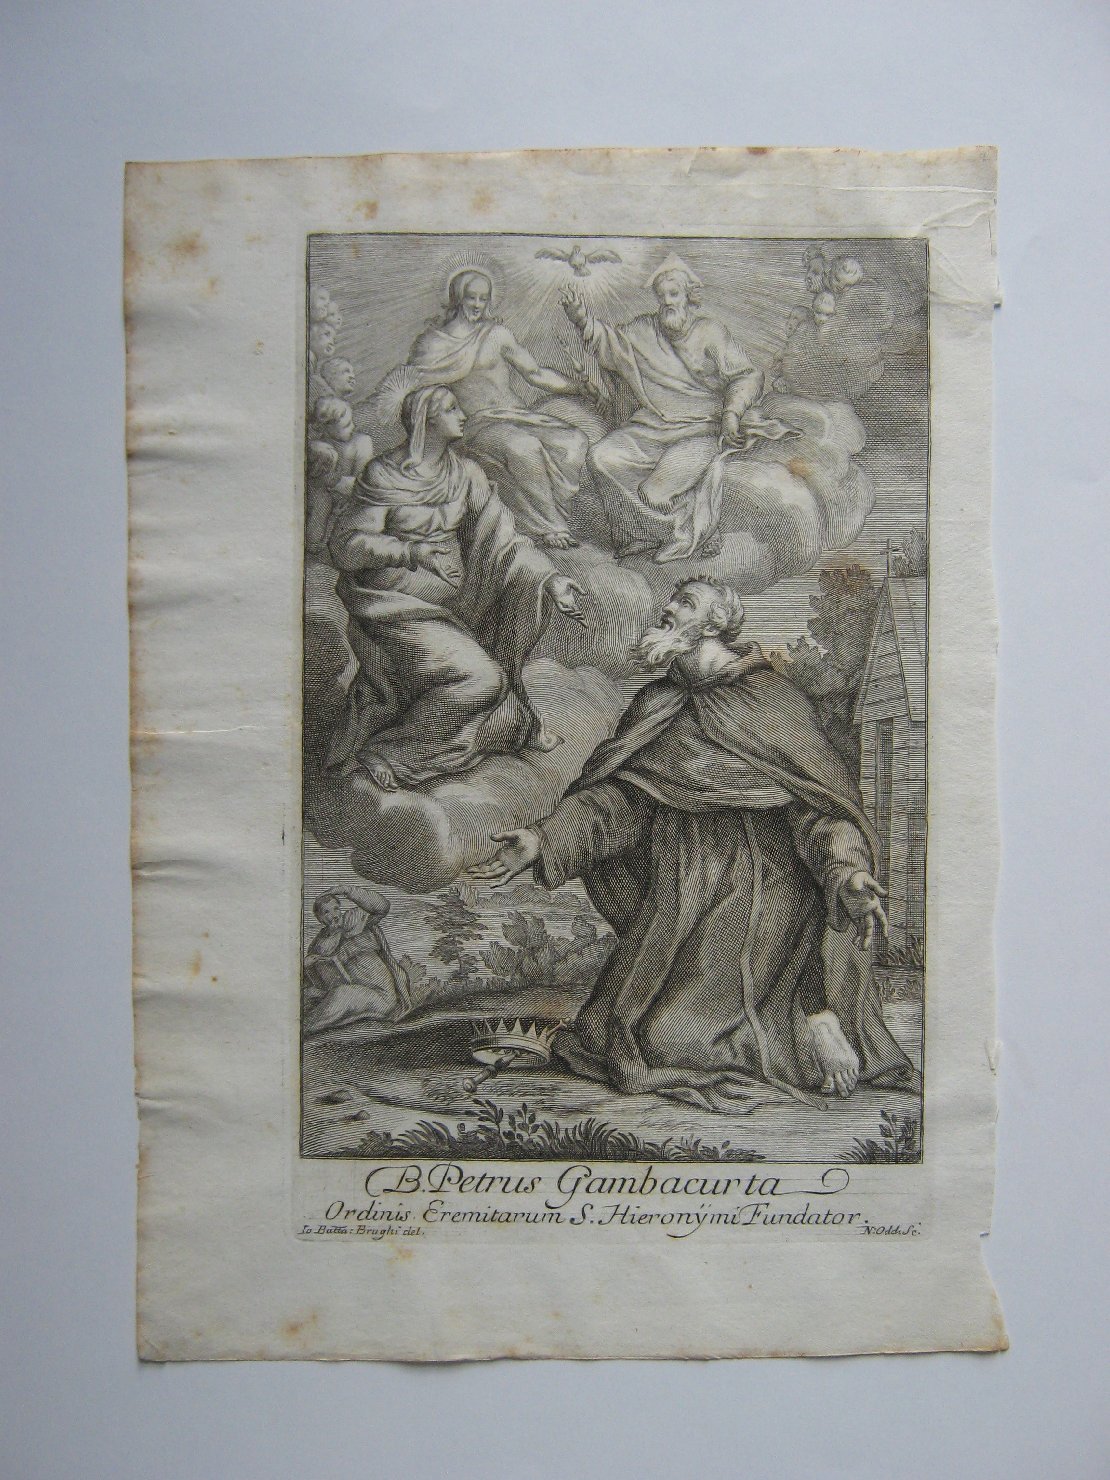 B. Petrus Gambacurta, beato (stampa, frammento) di Oddi Nicola (prima metà sec. XVIII)